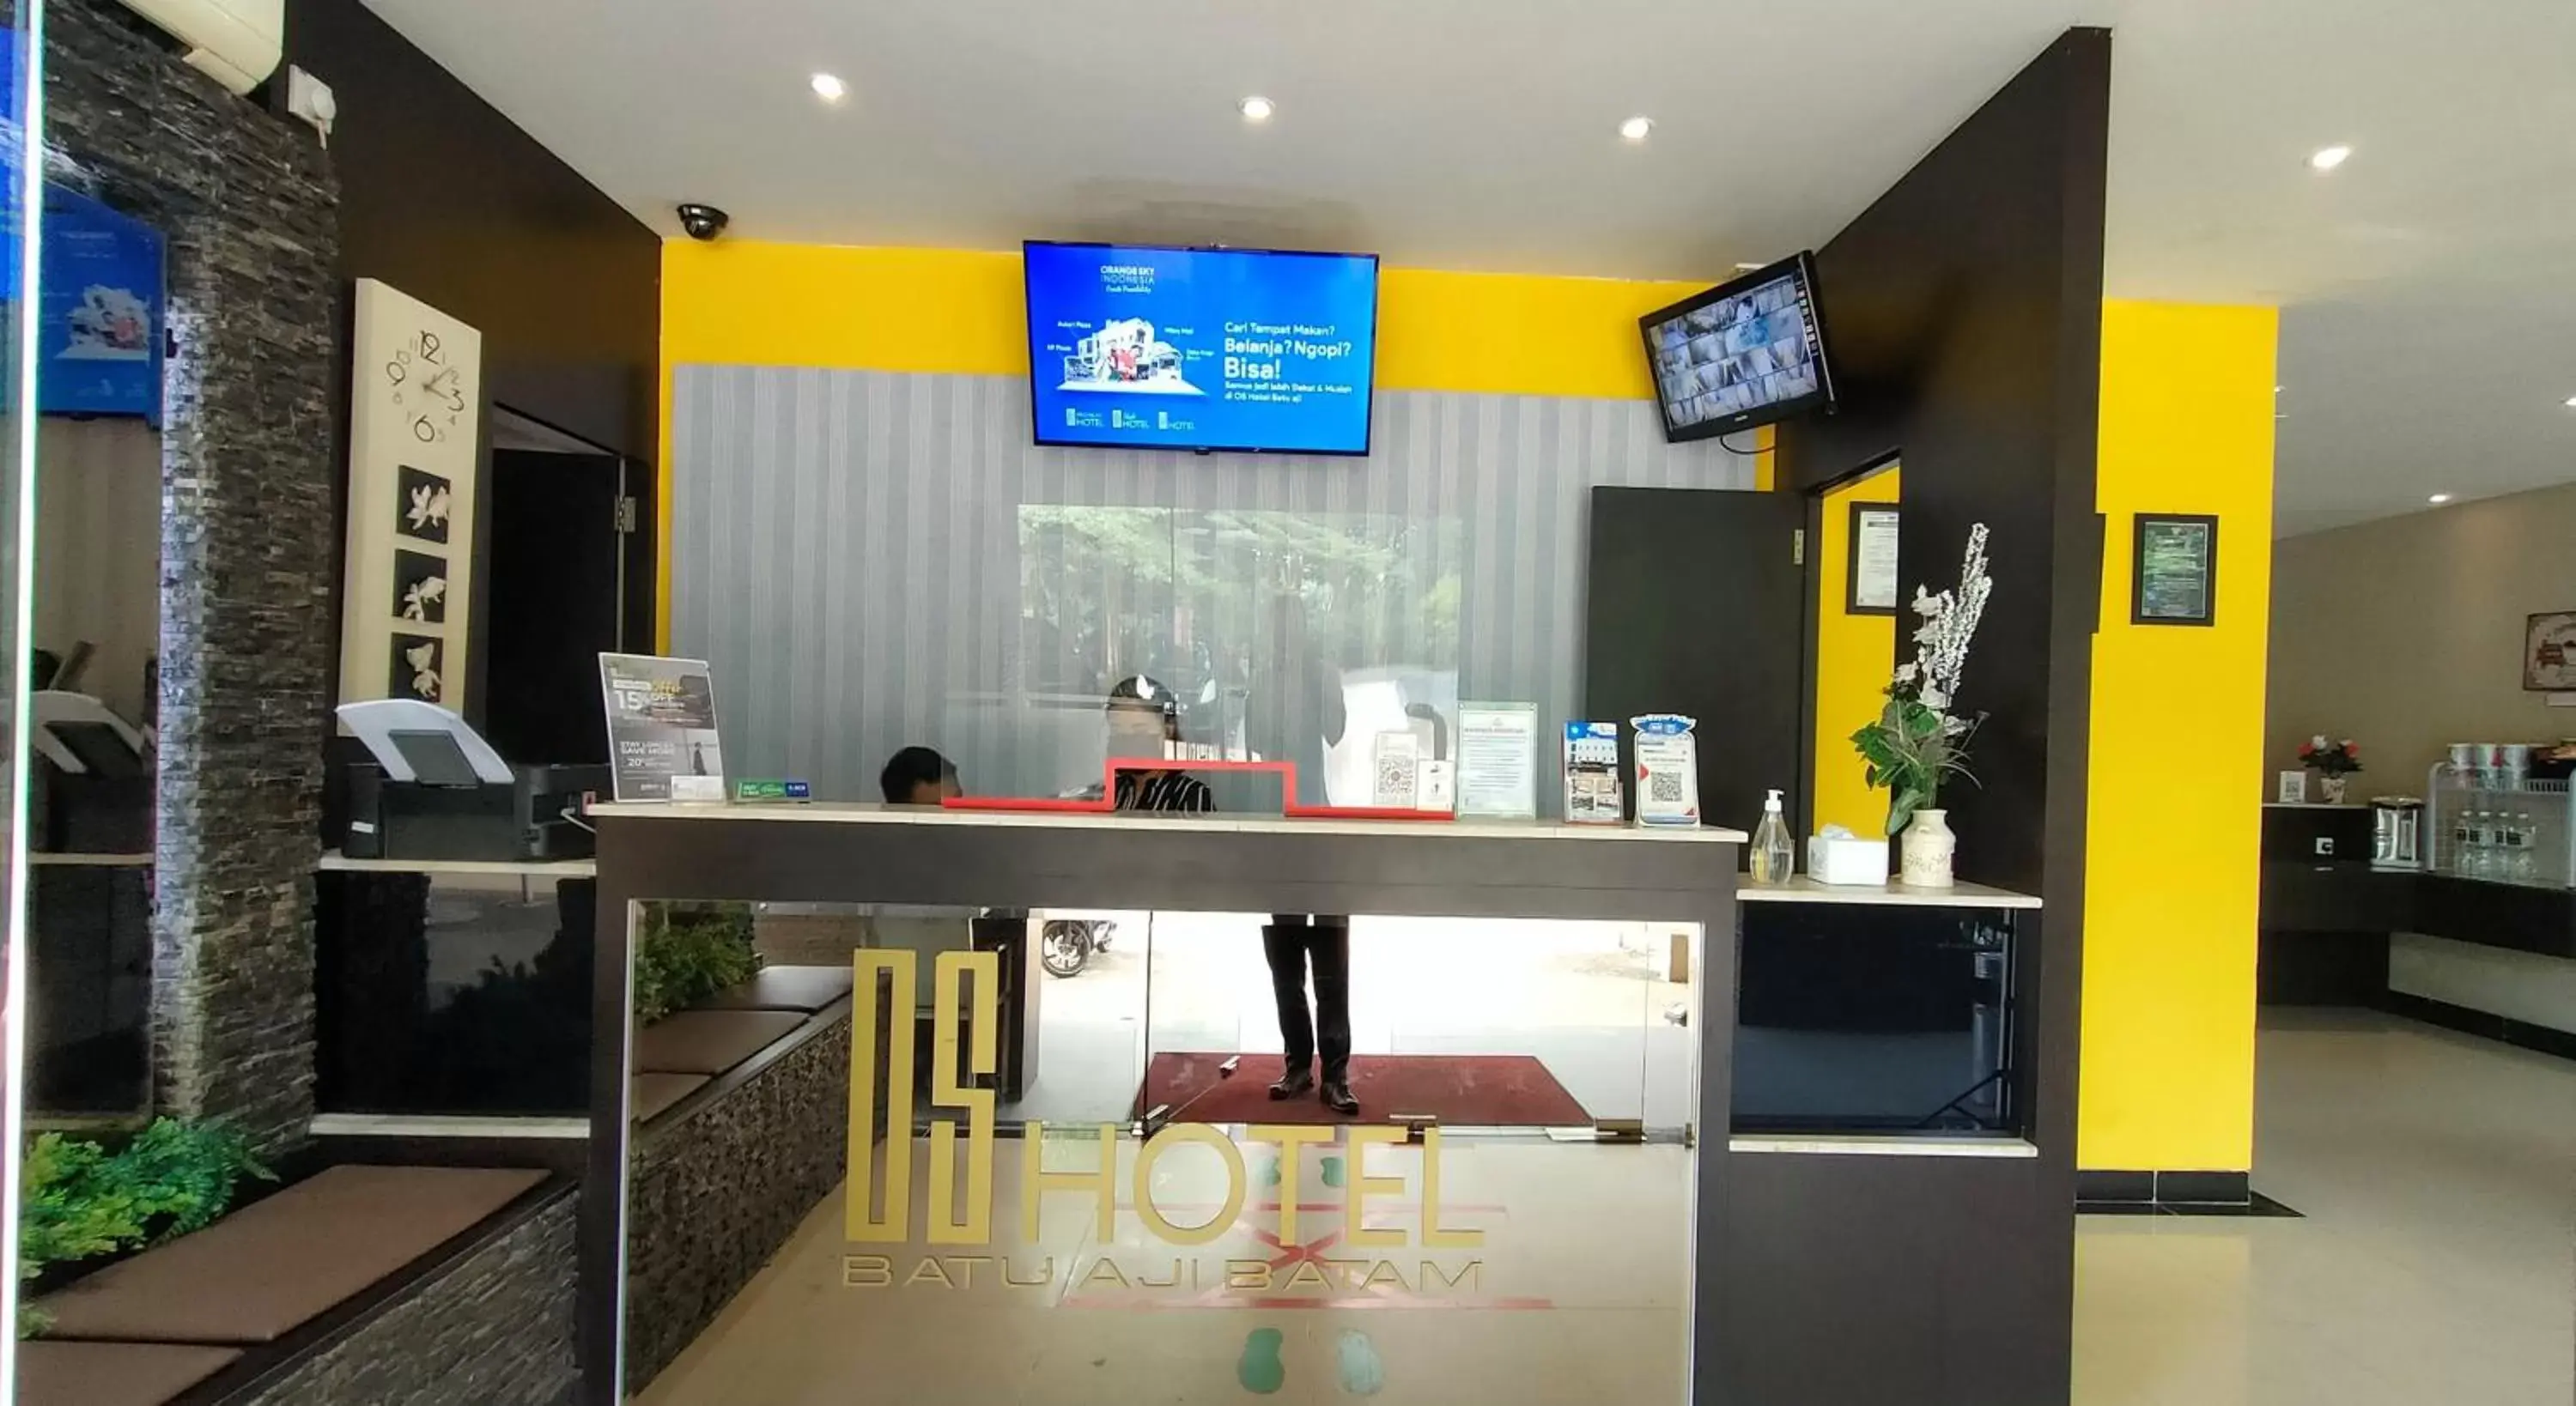 Lobby or reception, Restaurant/Places to Eat in OS Hotel Batu Aji Batam